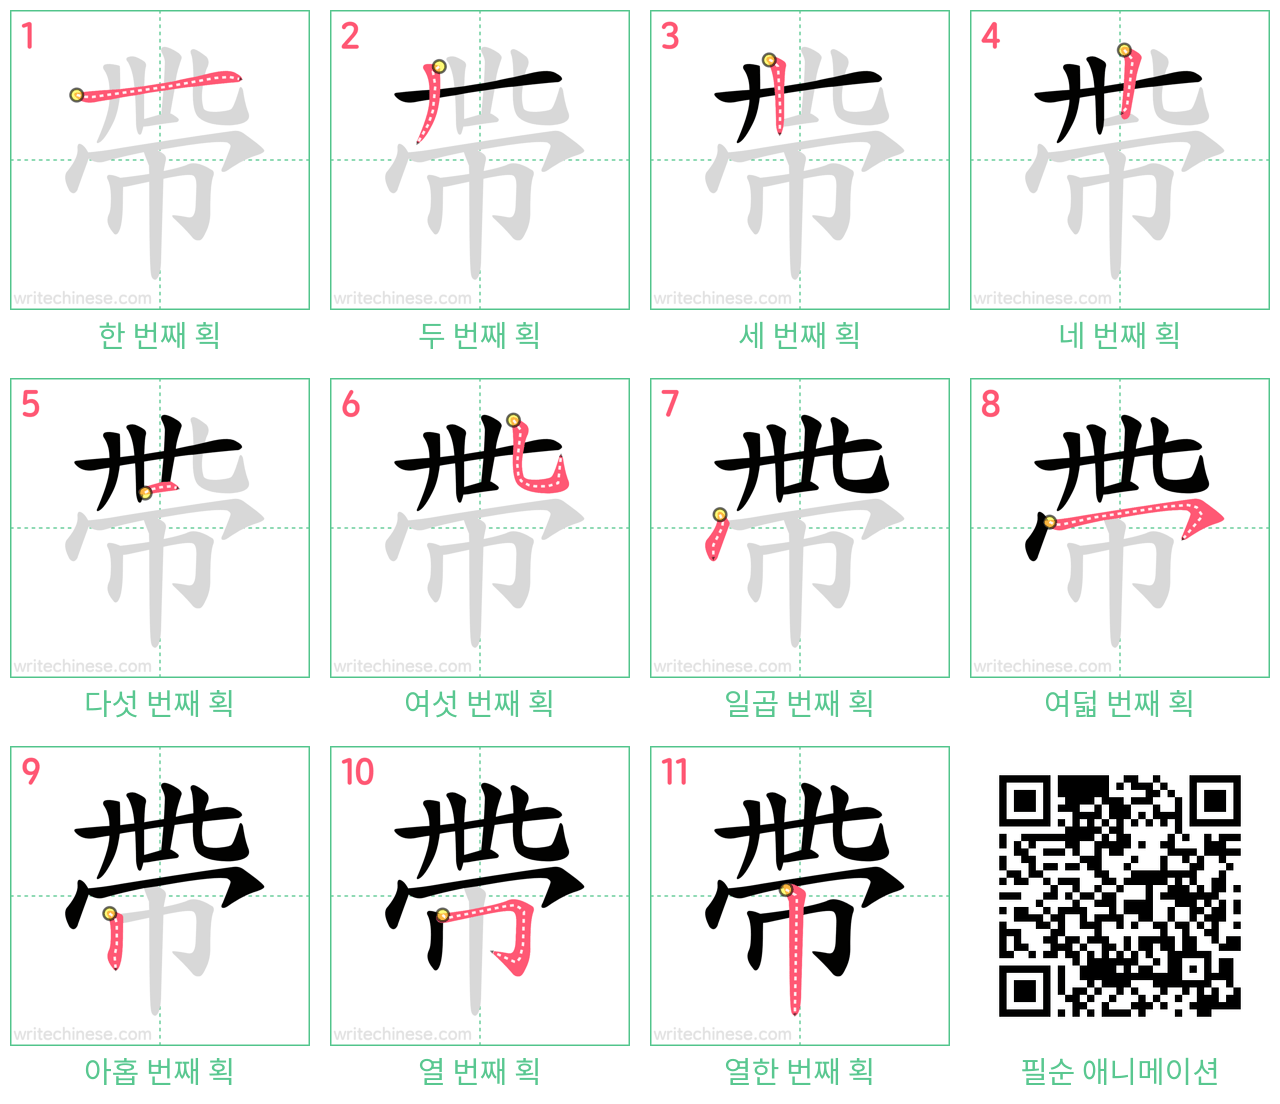 帶 step-by-step stroke order diagrams